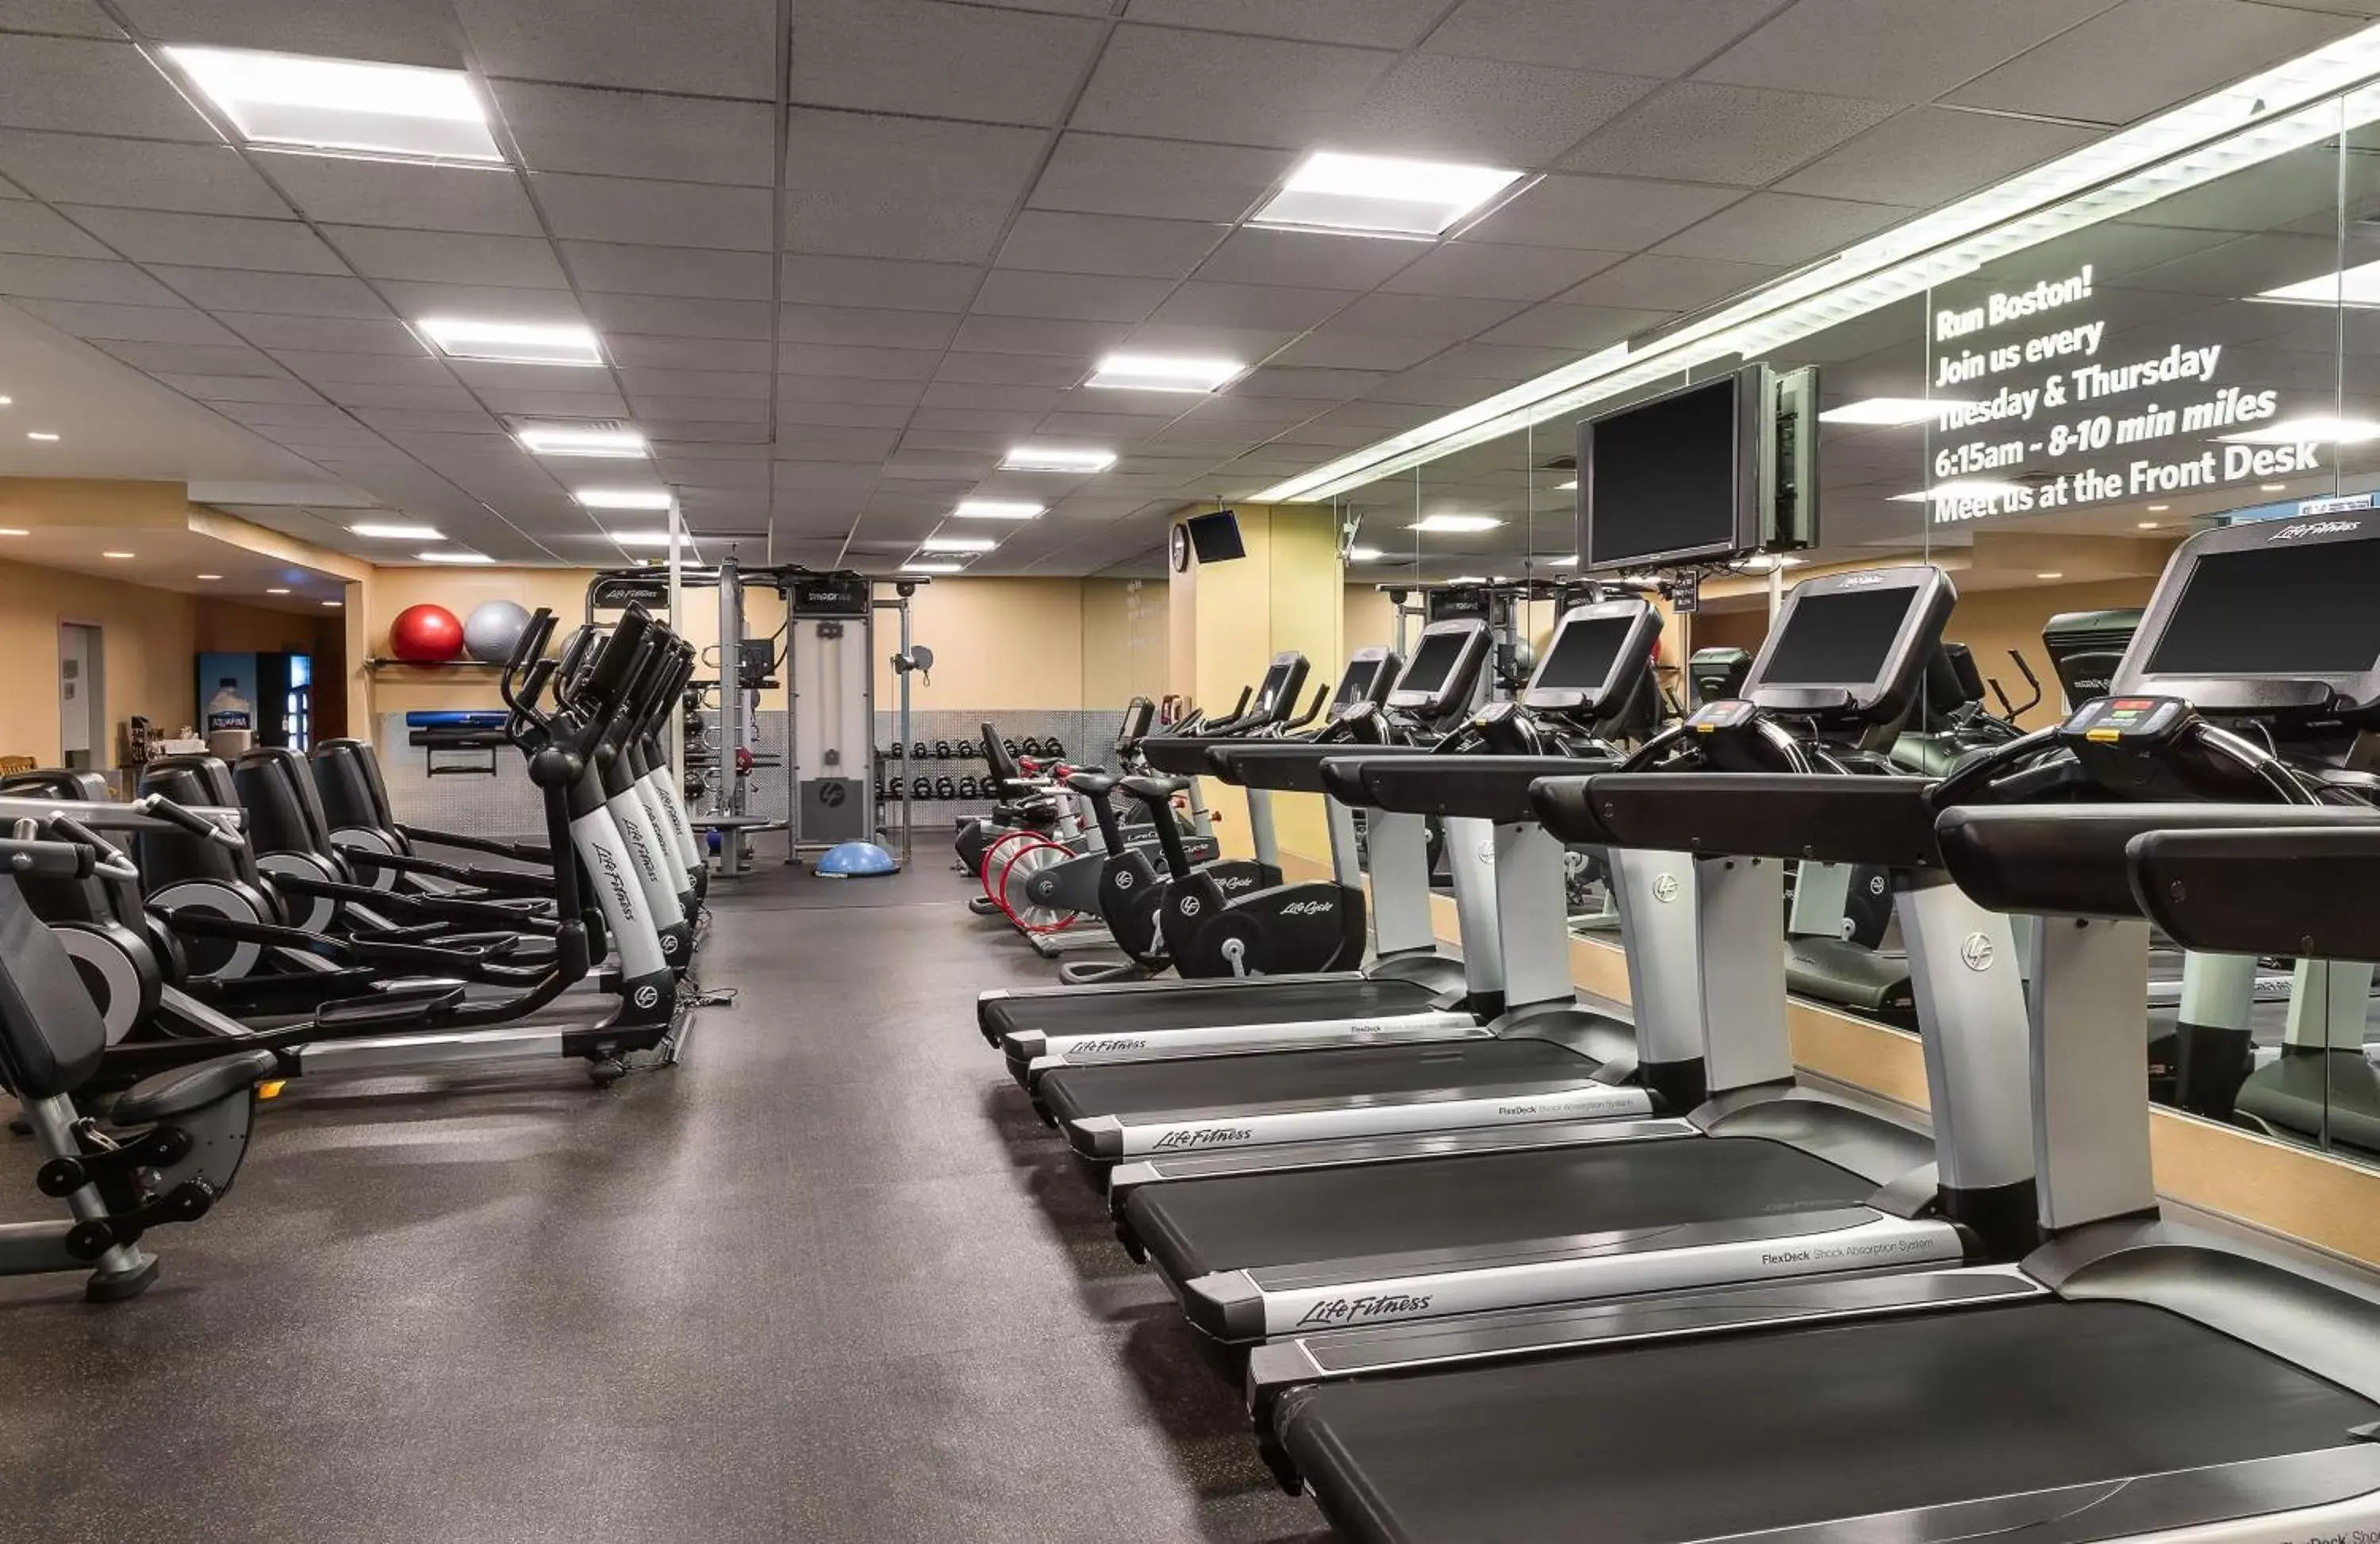 Fitness centre/facilities, Fitness Center/Facilities in Hyatt Regency Boston